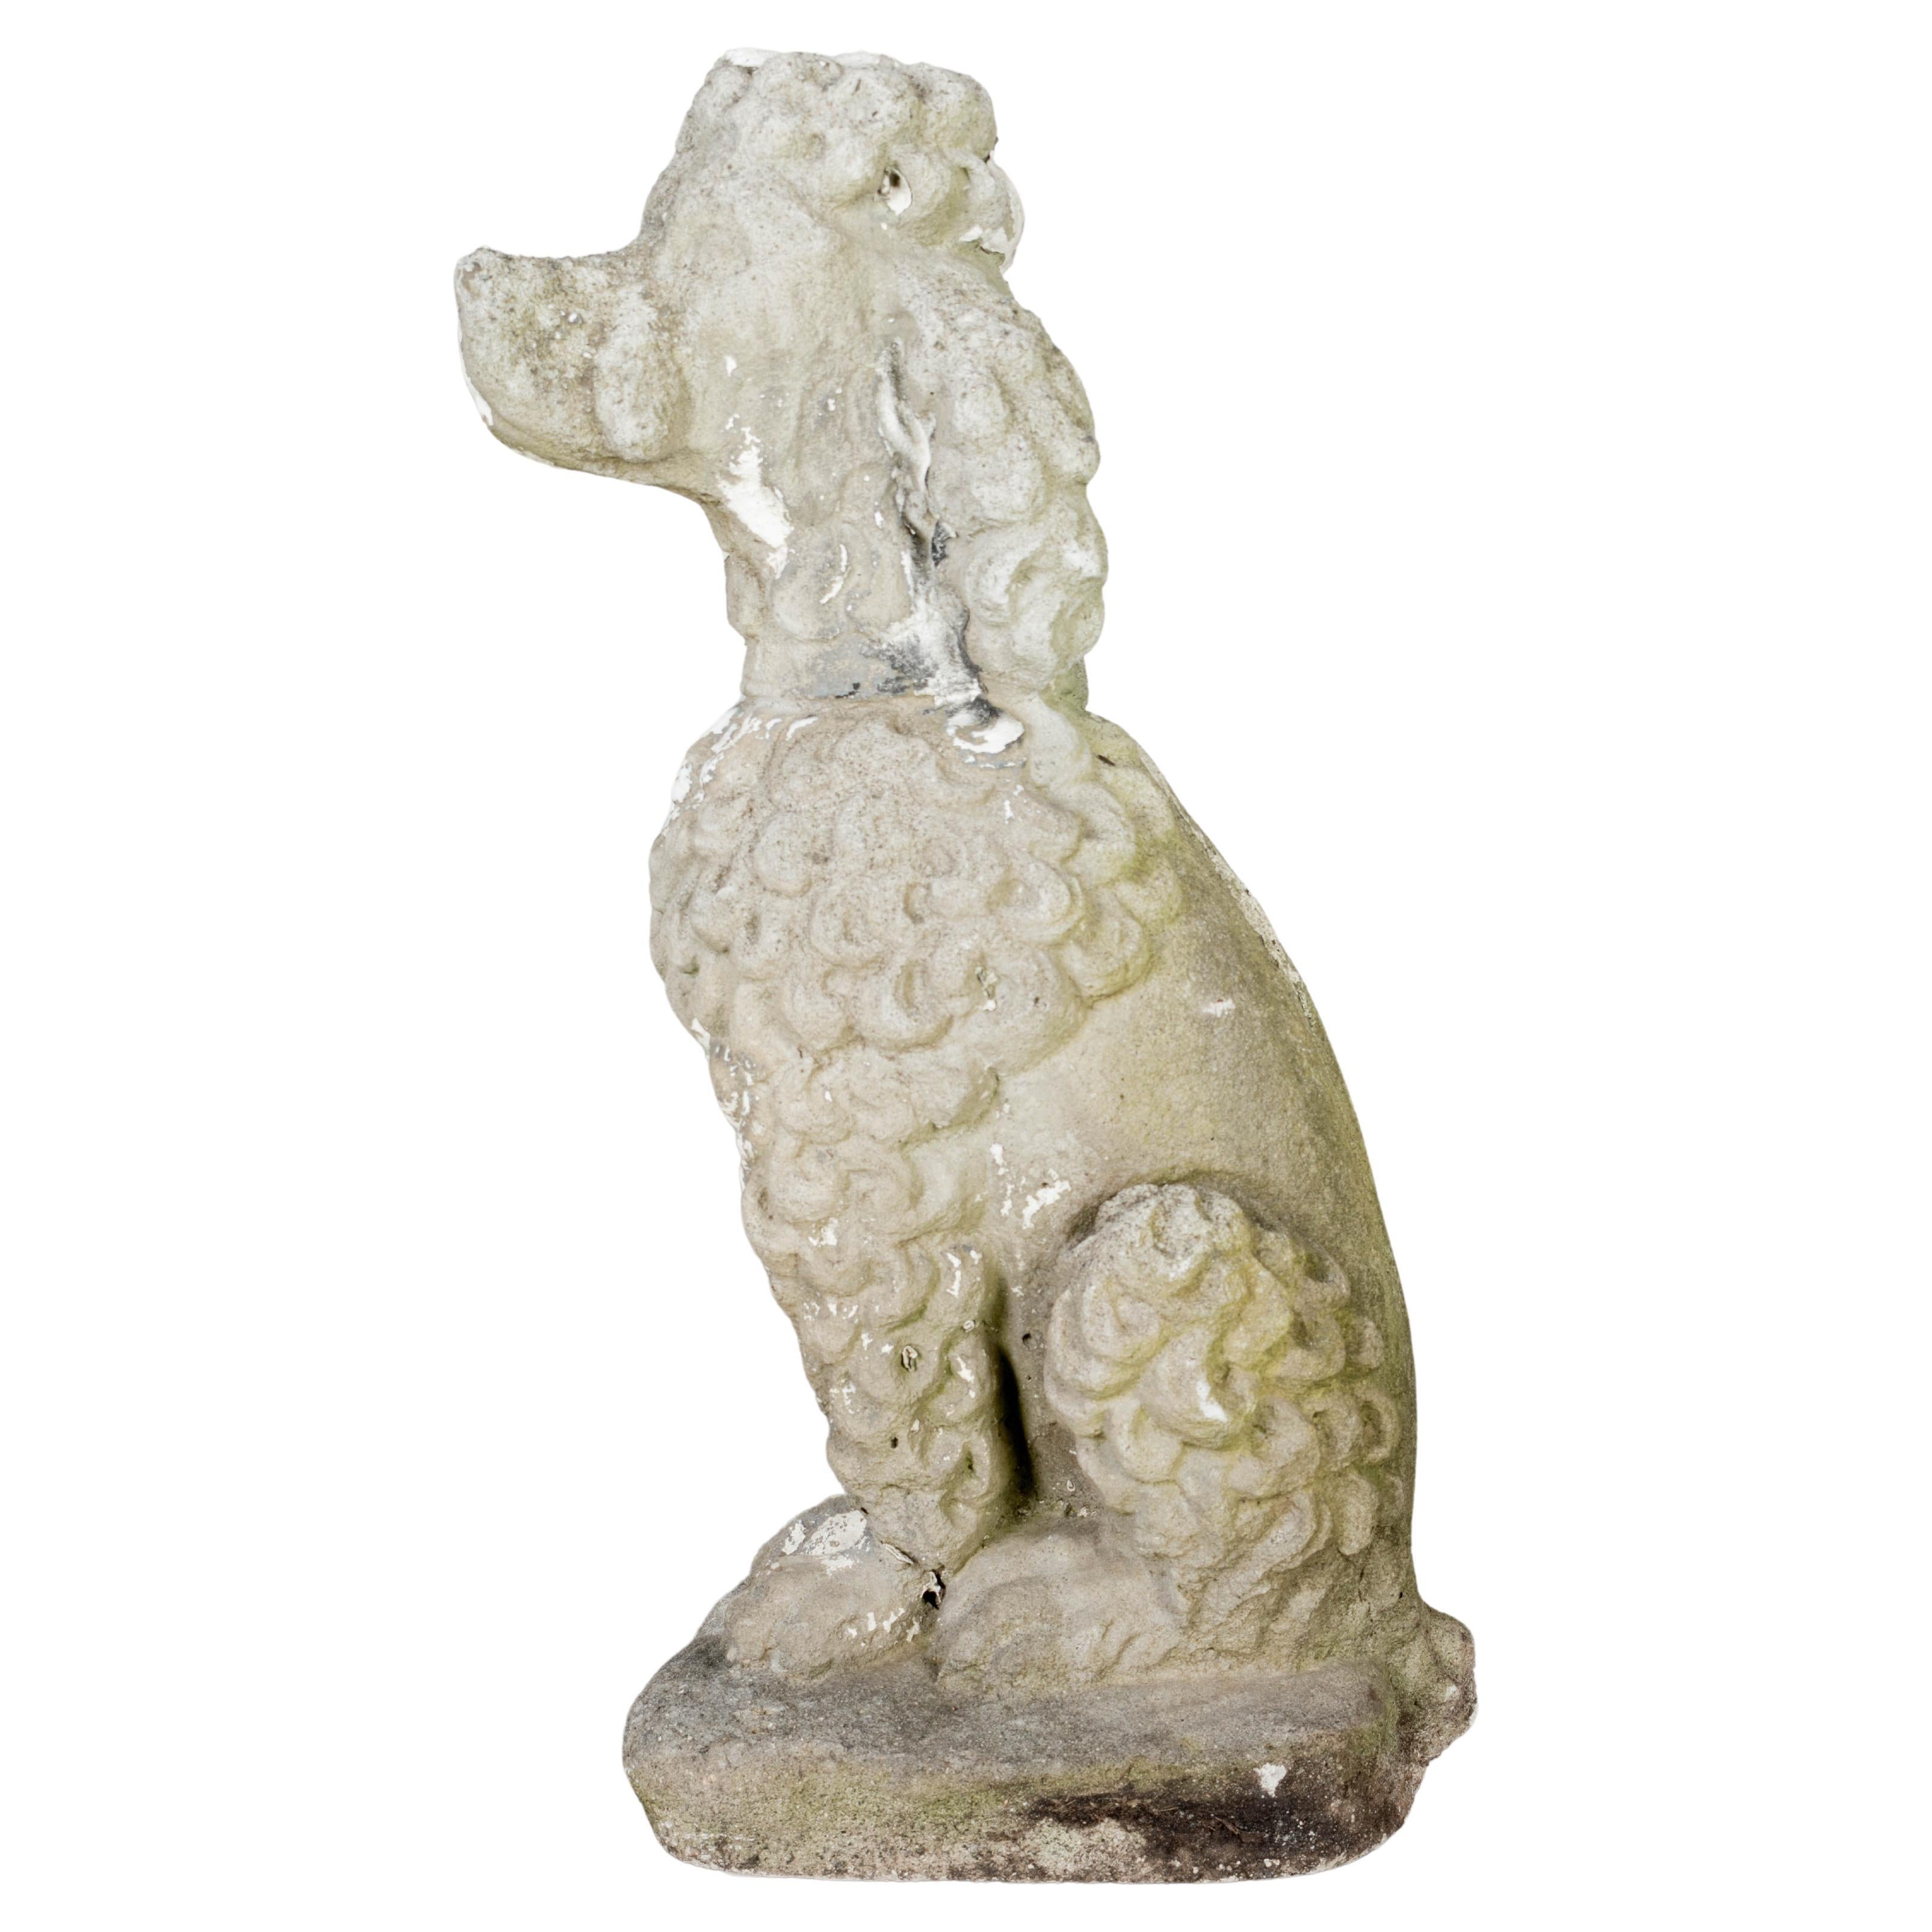 Vintage Cast Stone Poodle Garden Statue